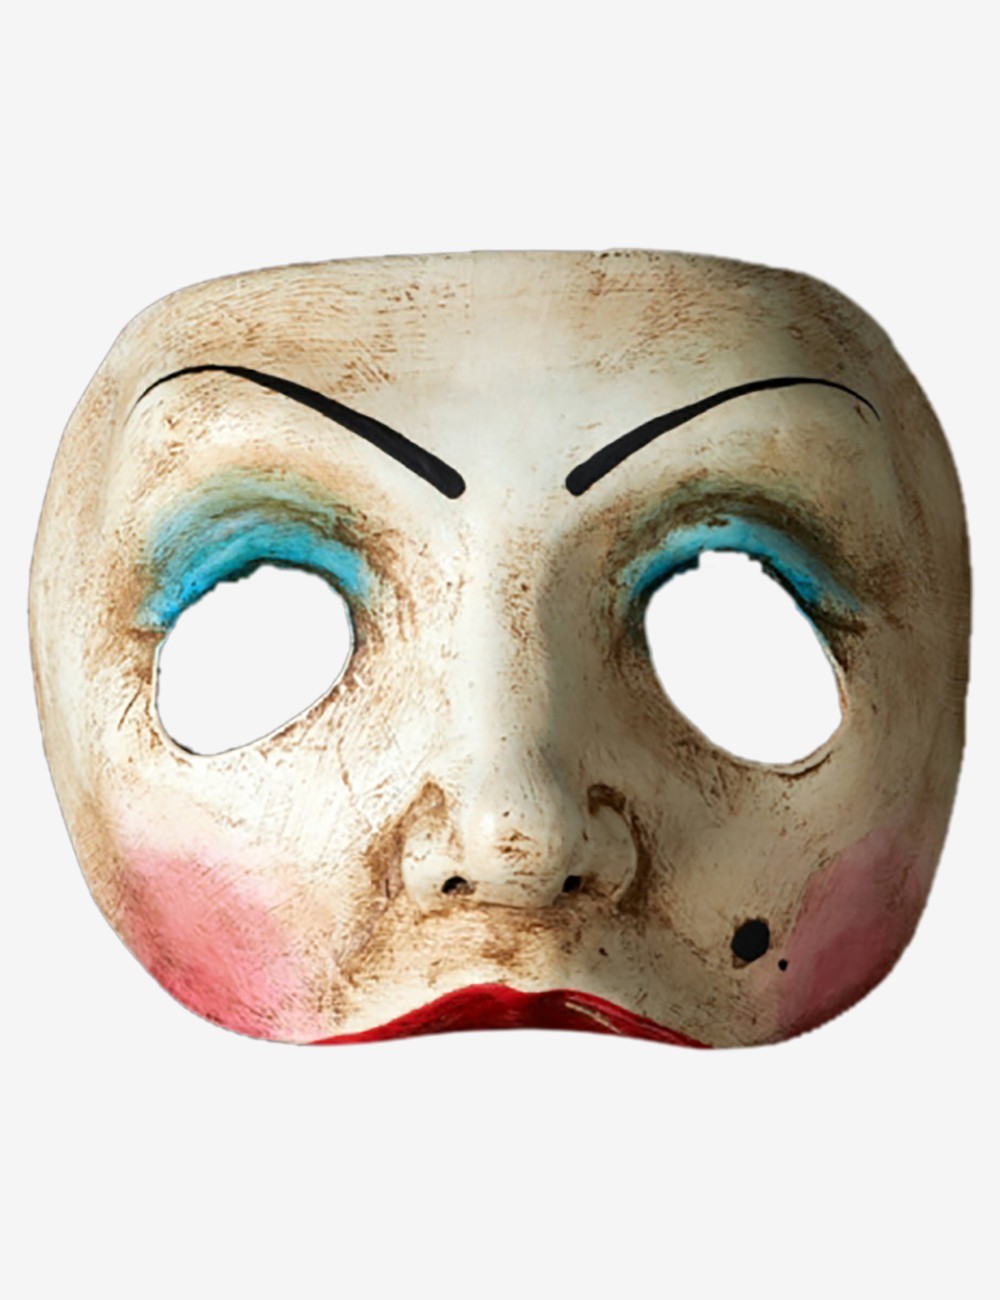 Colombina  vendita maschere veneziane online: artigianali e prodotte a  venezia